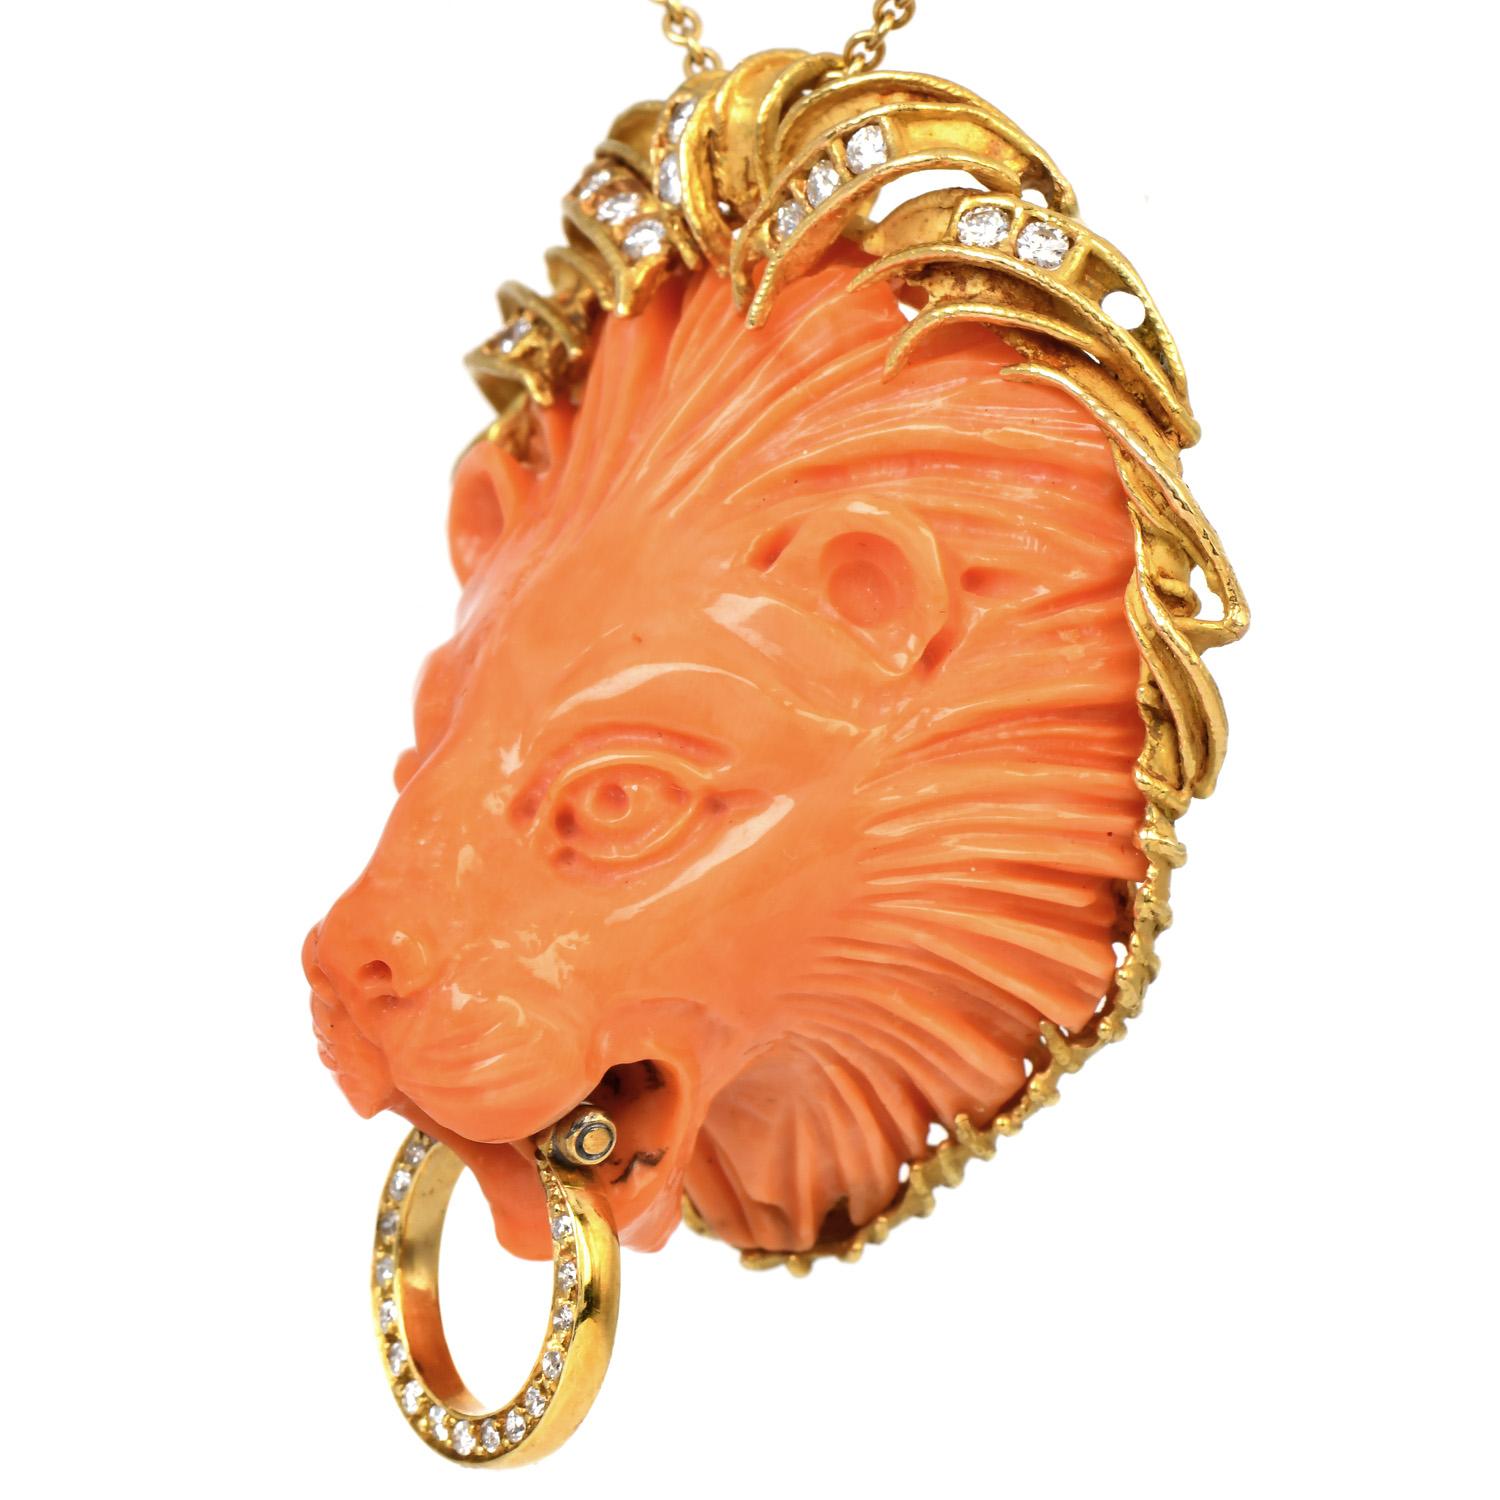 Genießen Sie dieses Meisterwerk aus der Ära der 1970er Jahre. Der Löwe symbolisiert Majestät, Mut, Stärke und Sinnlichkeit. Dieser Cocktail-Anhänger in Form eines Löwenkopfes aus Koralle mit einer exquisiten Schnitzerei ist von einem 18-karätigen